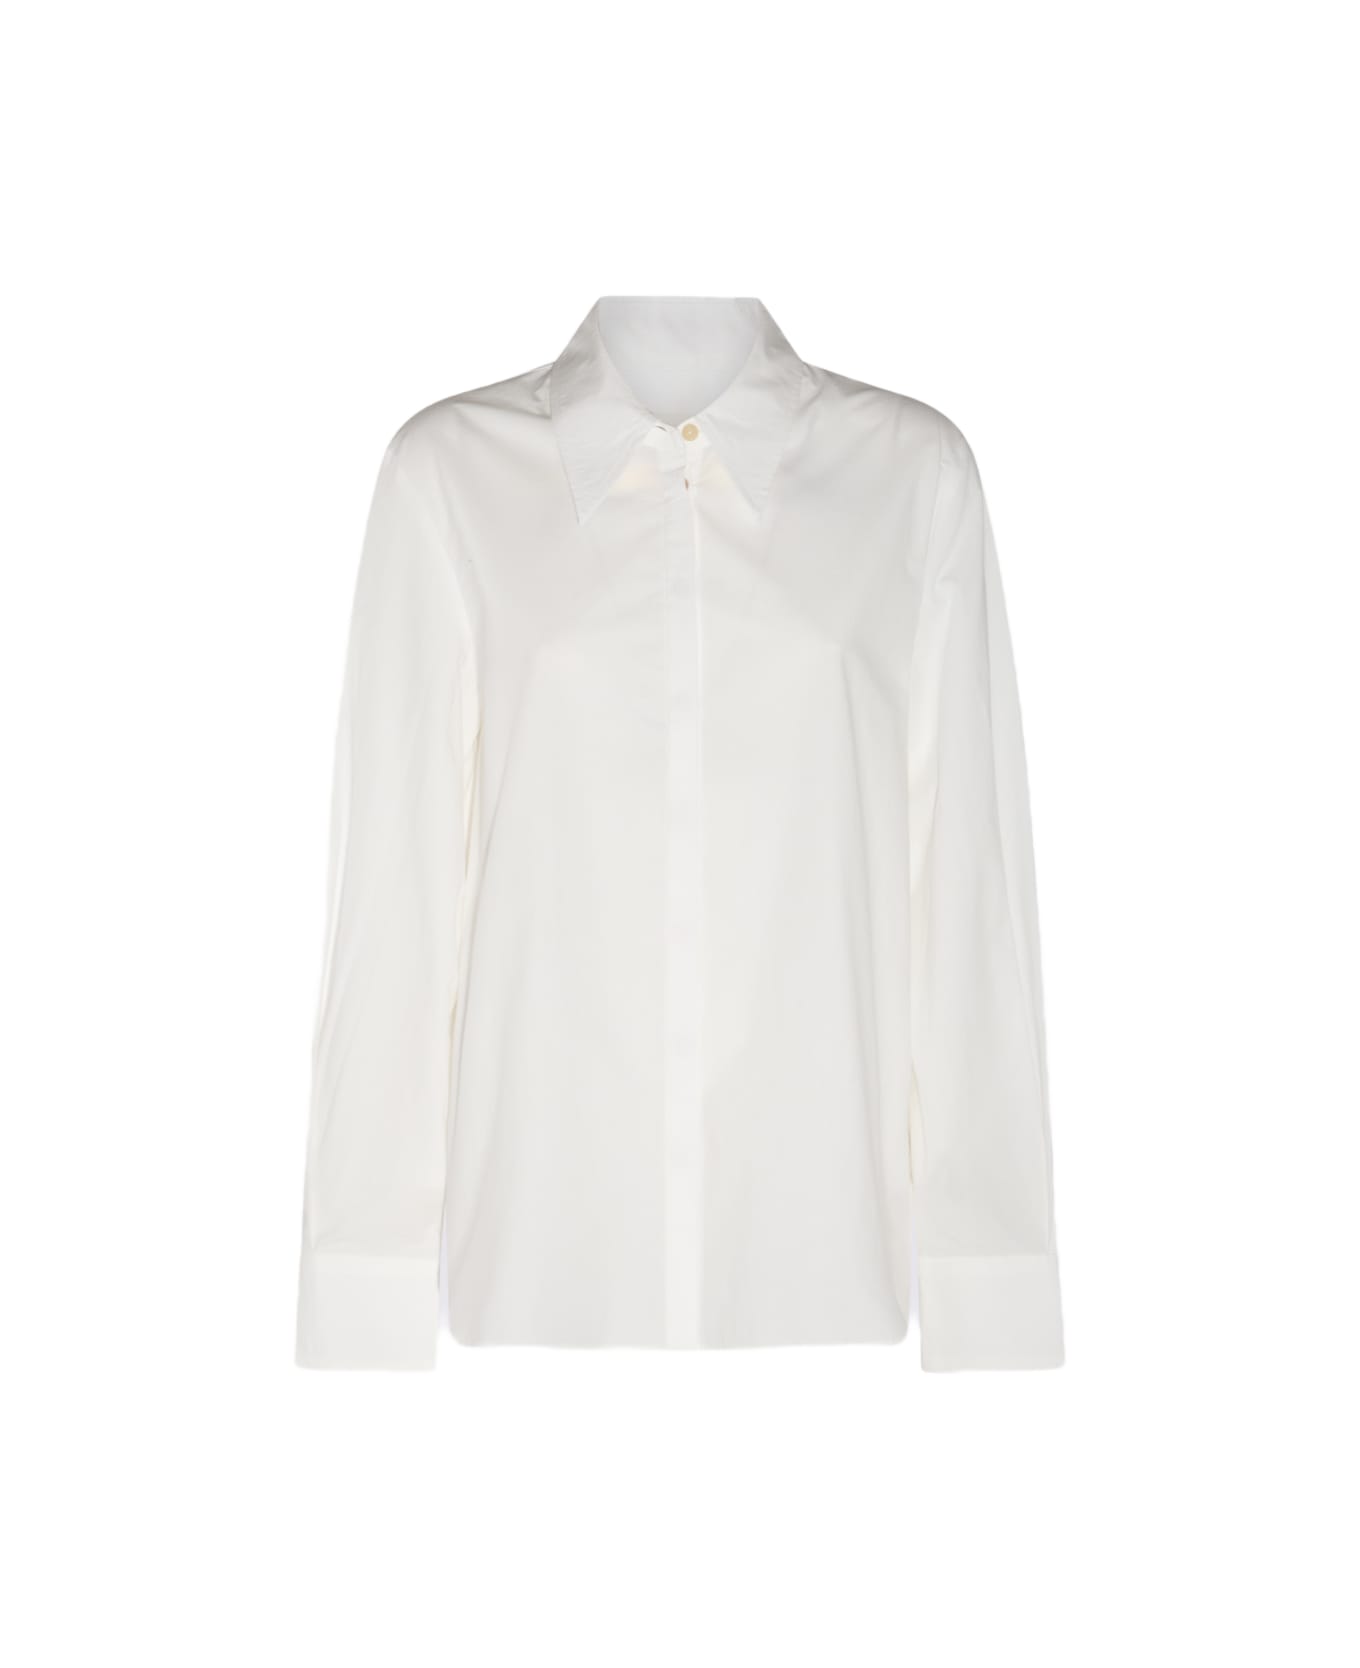 Khaite White Cotton Shirt - White